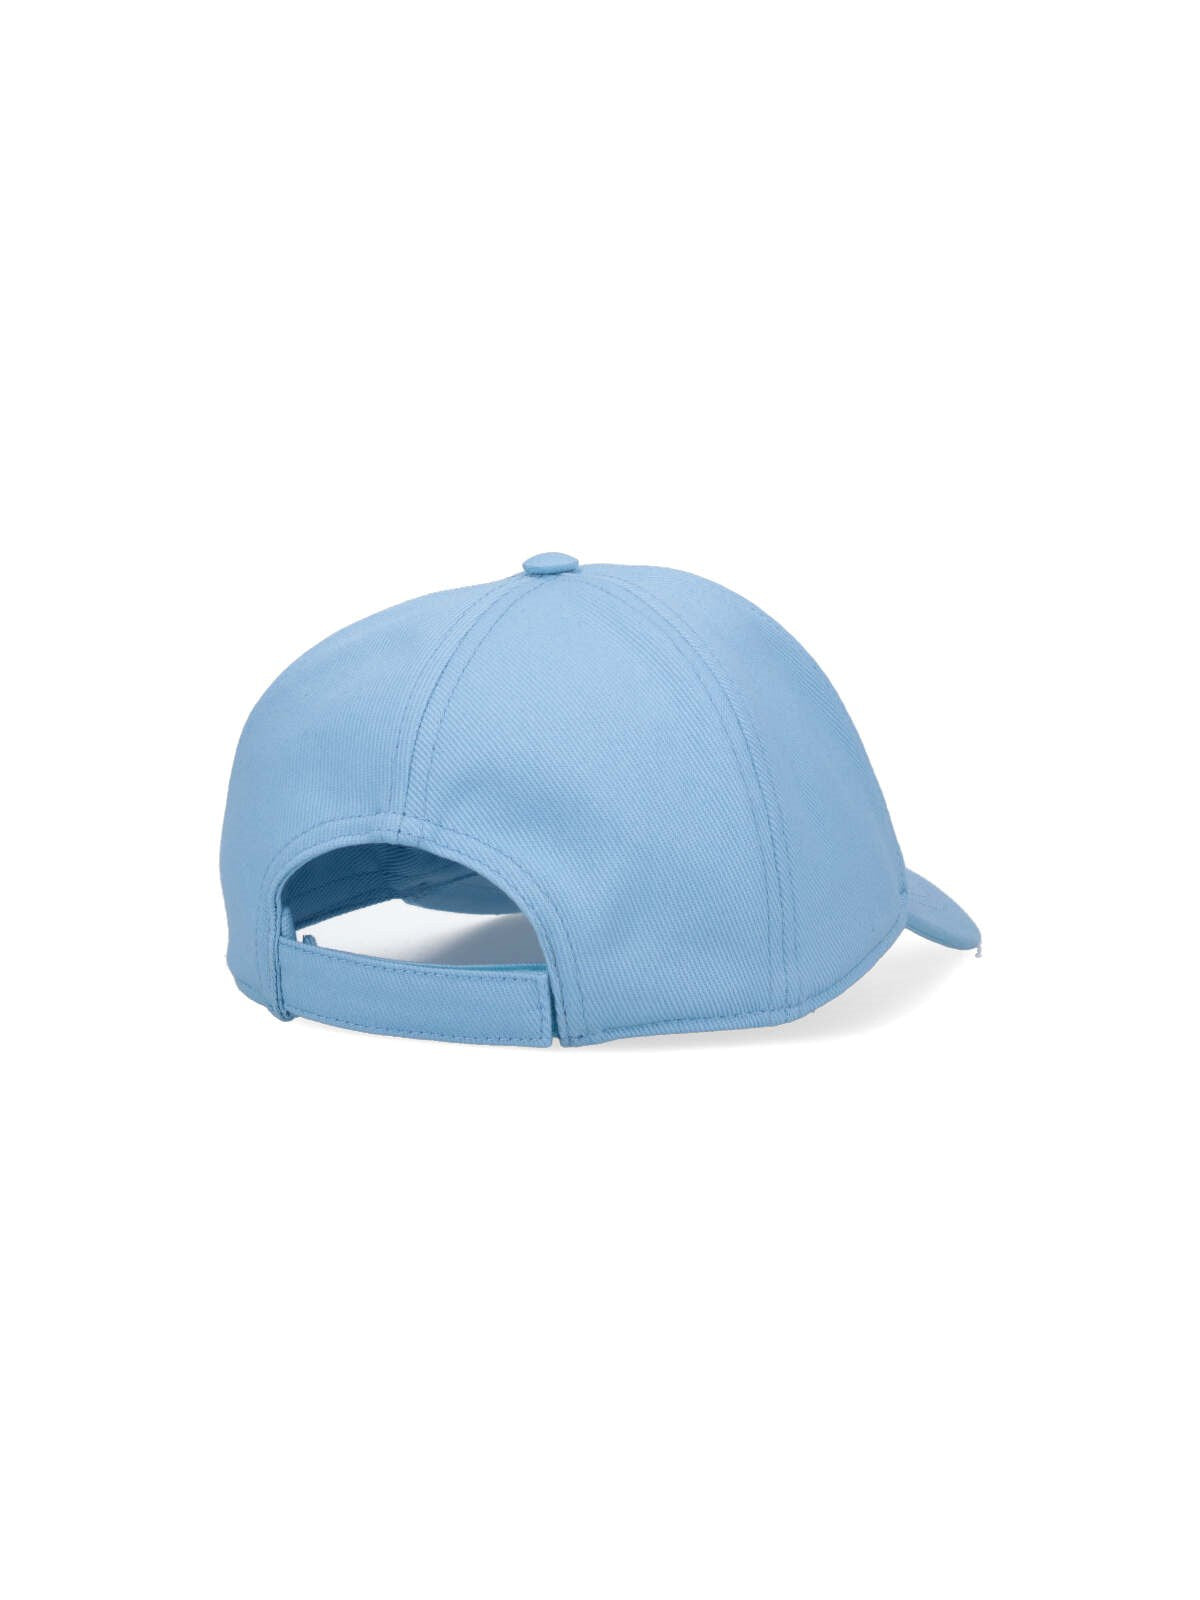 miu miu cappello baseball logo-cappelli-Miu Miu-cappello baseball logo miu miu, in cotone azzurro, ricamo logo bianco fronte, visiera curva, cinturino regolabile retro. codice prodotto 5hc179 2dxif0d9k composizione: 100% cotone made in: italia - Dresso